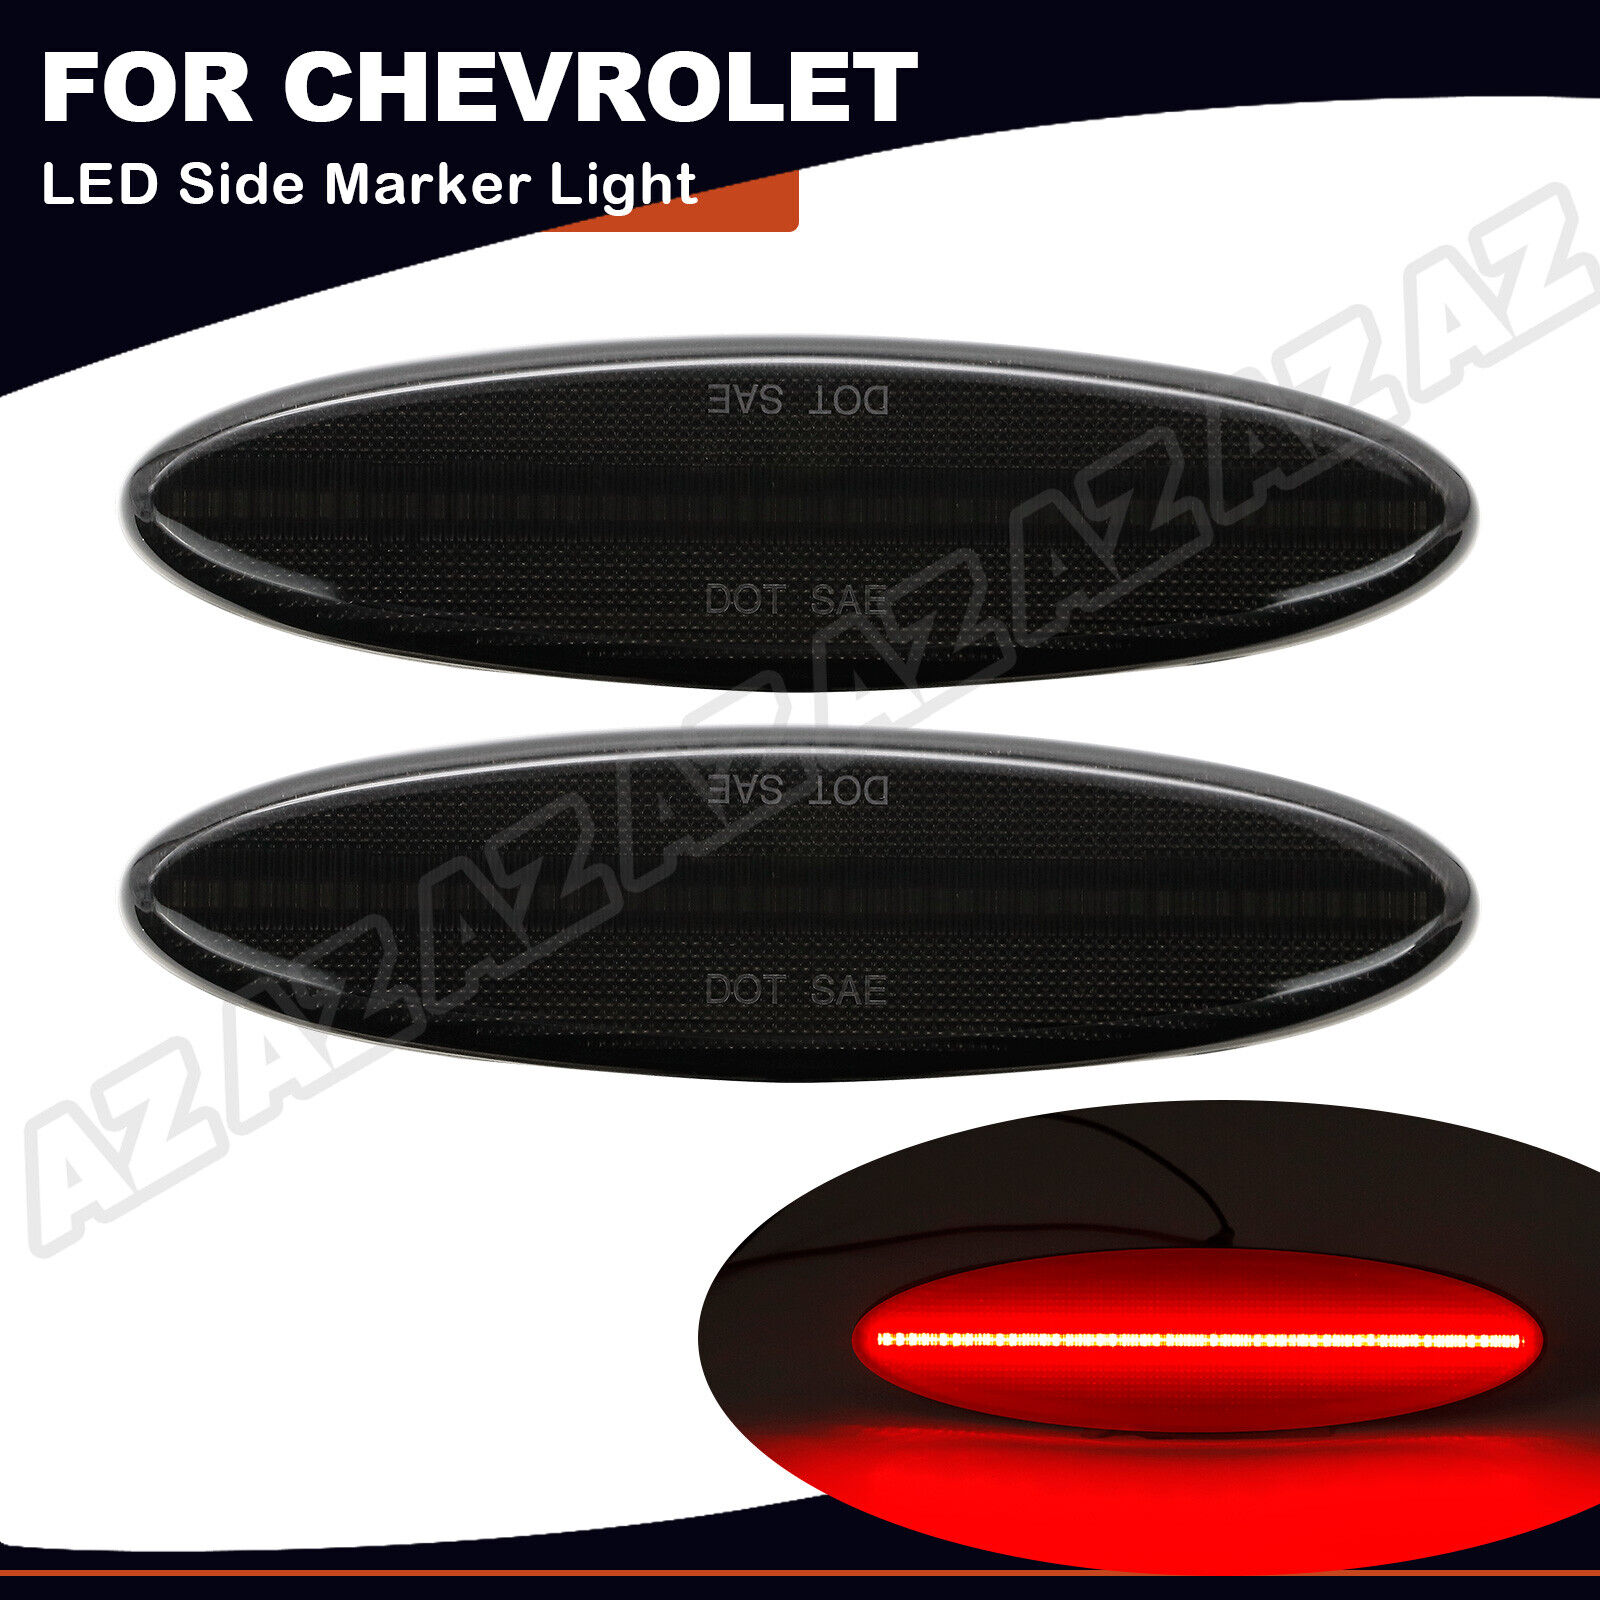 2pcs Smoked Red LED Side Marker Light Rear For Chevrolet Corvette C5 1997-2004